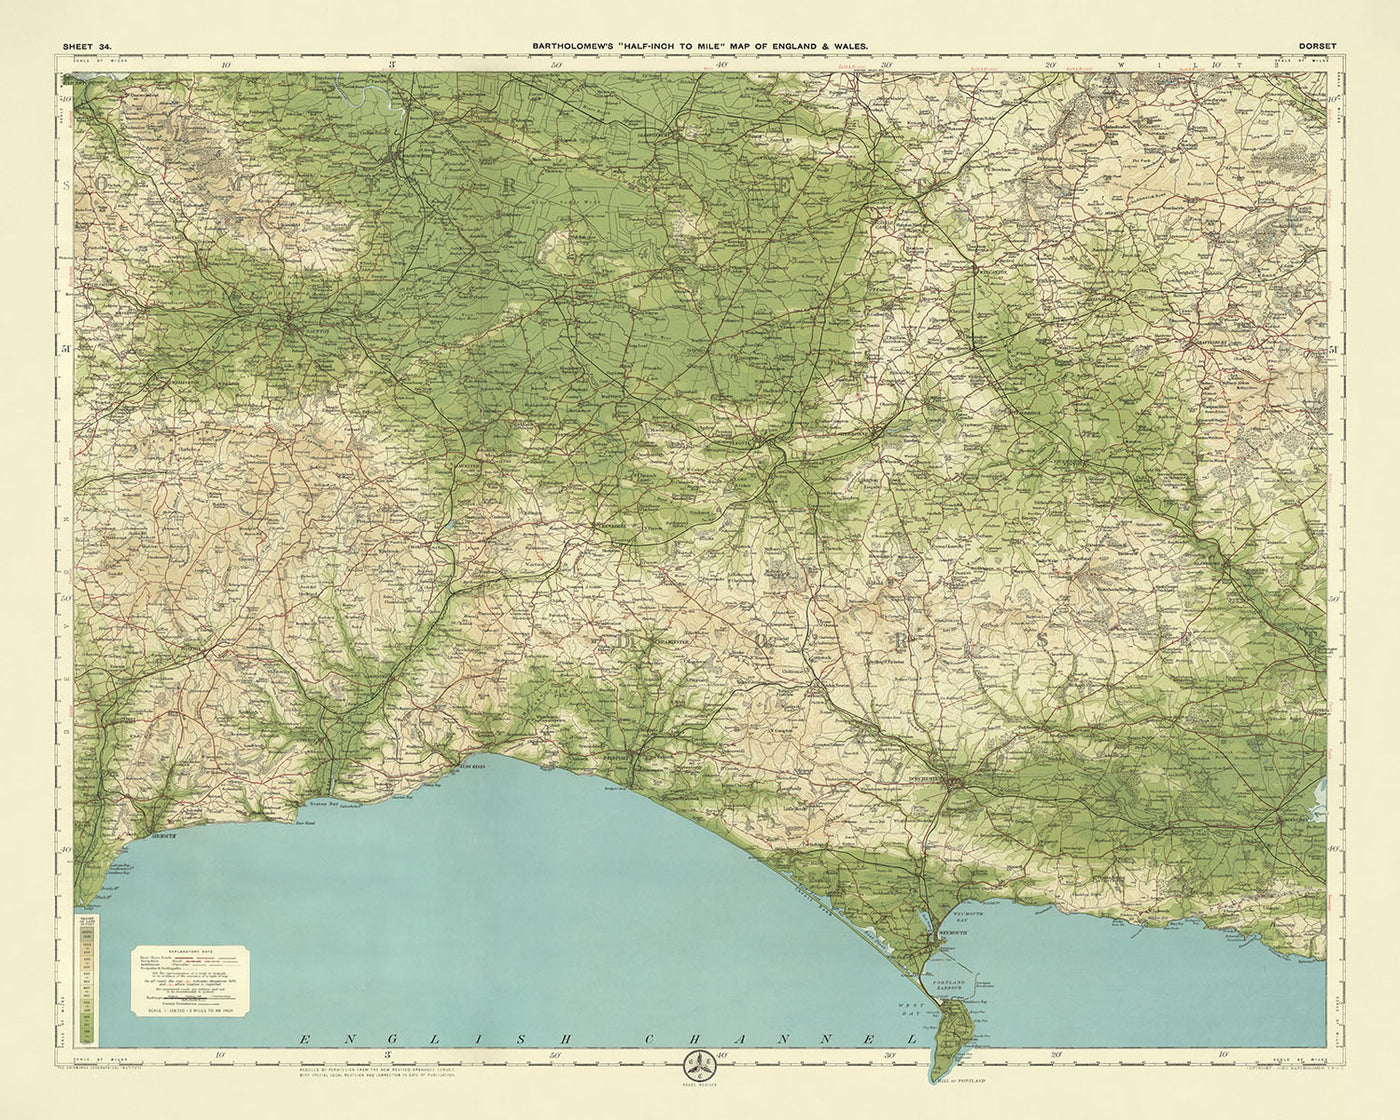 Alte OS-Karte von Dorset von Bartholomew, 1901: Bournemouth, Poole, Weymouth, Chesil Beach, Corfe Castle, Durdle Door